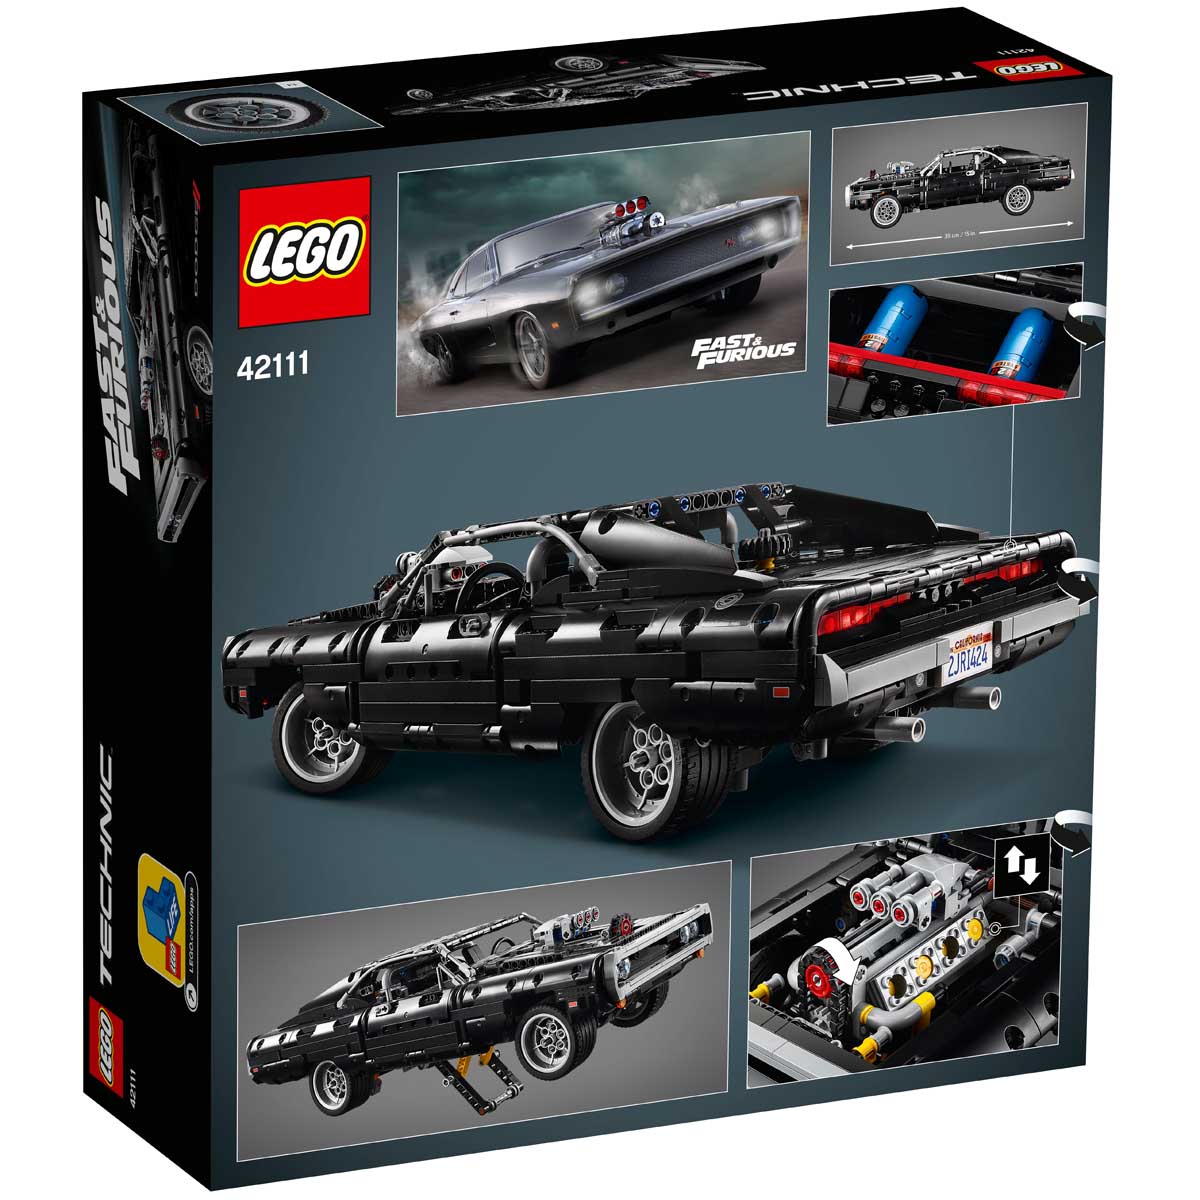 Köp LEGO Technic 42111 Dom's Dodge Charger på lekia.se